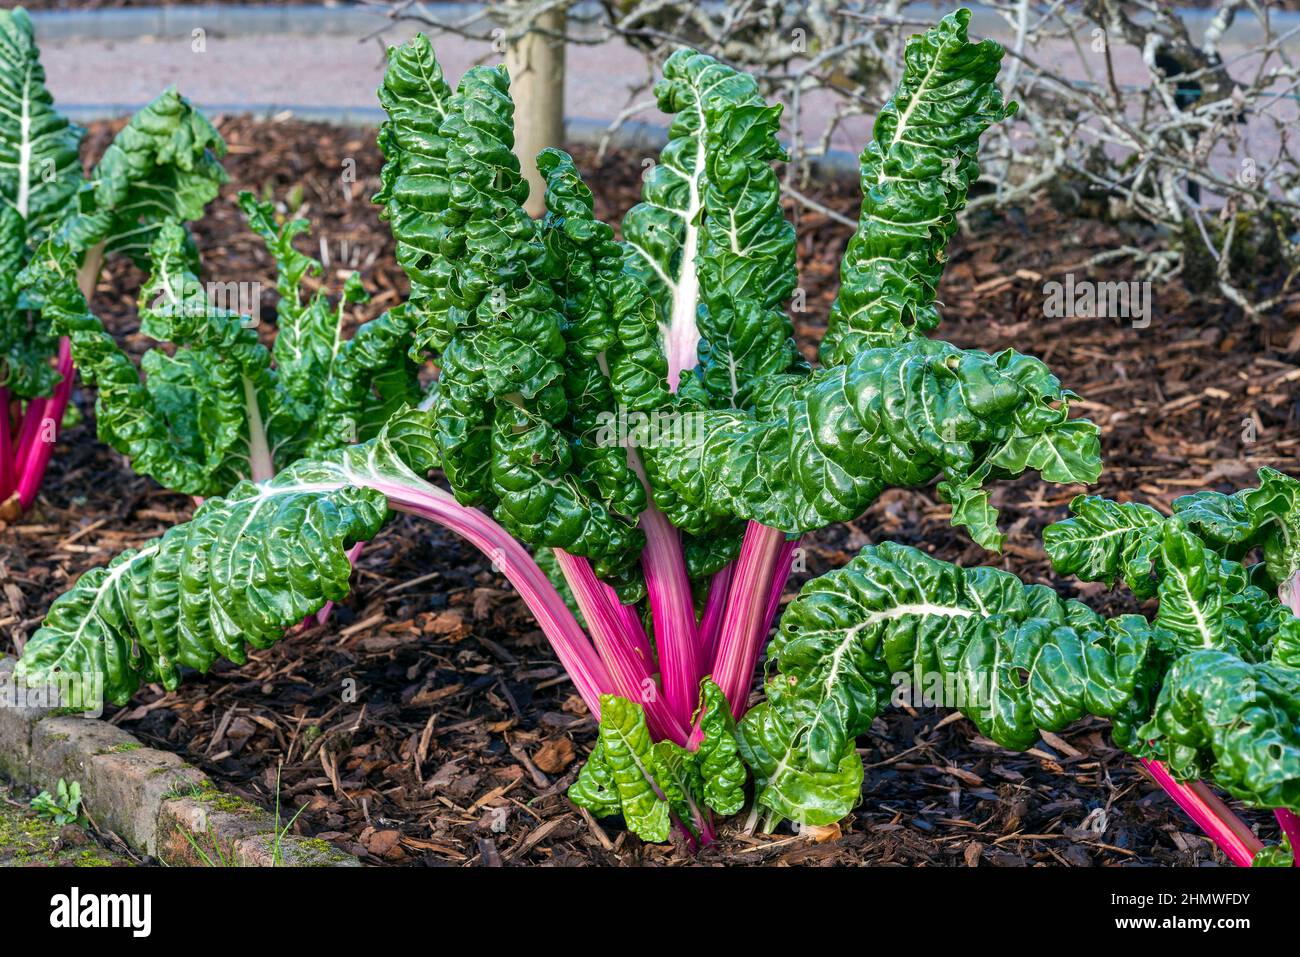 Bêta vulgaris subsp cicla var flavescens 'Rhubarb Chard' une culture alimentaire de salade végétale avec des avantages de régime alimentaire santé, image de stock photo Banque D'Images